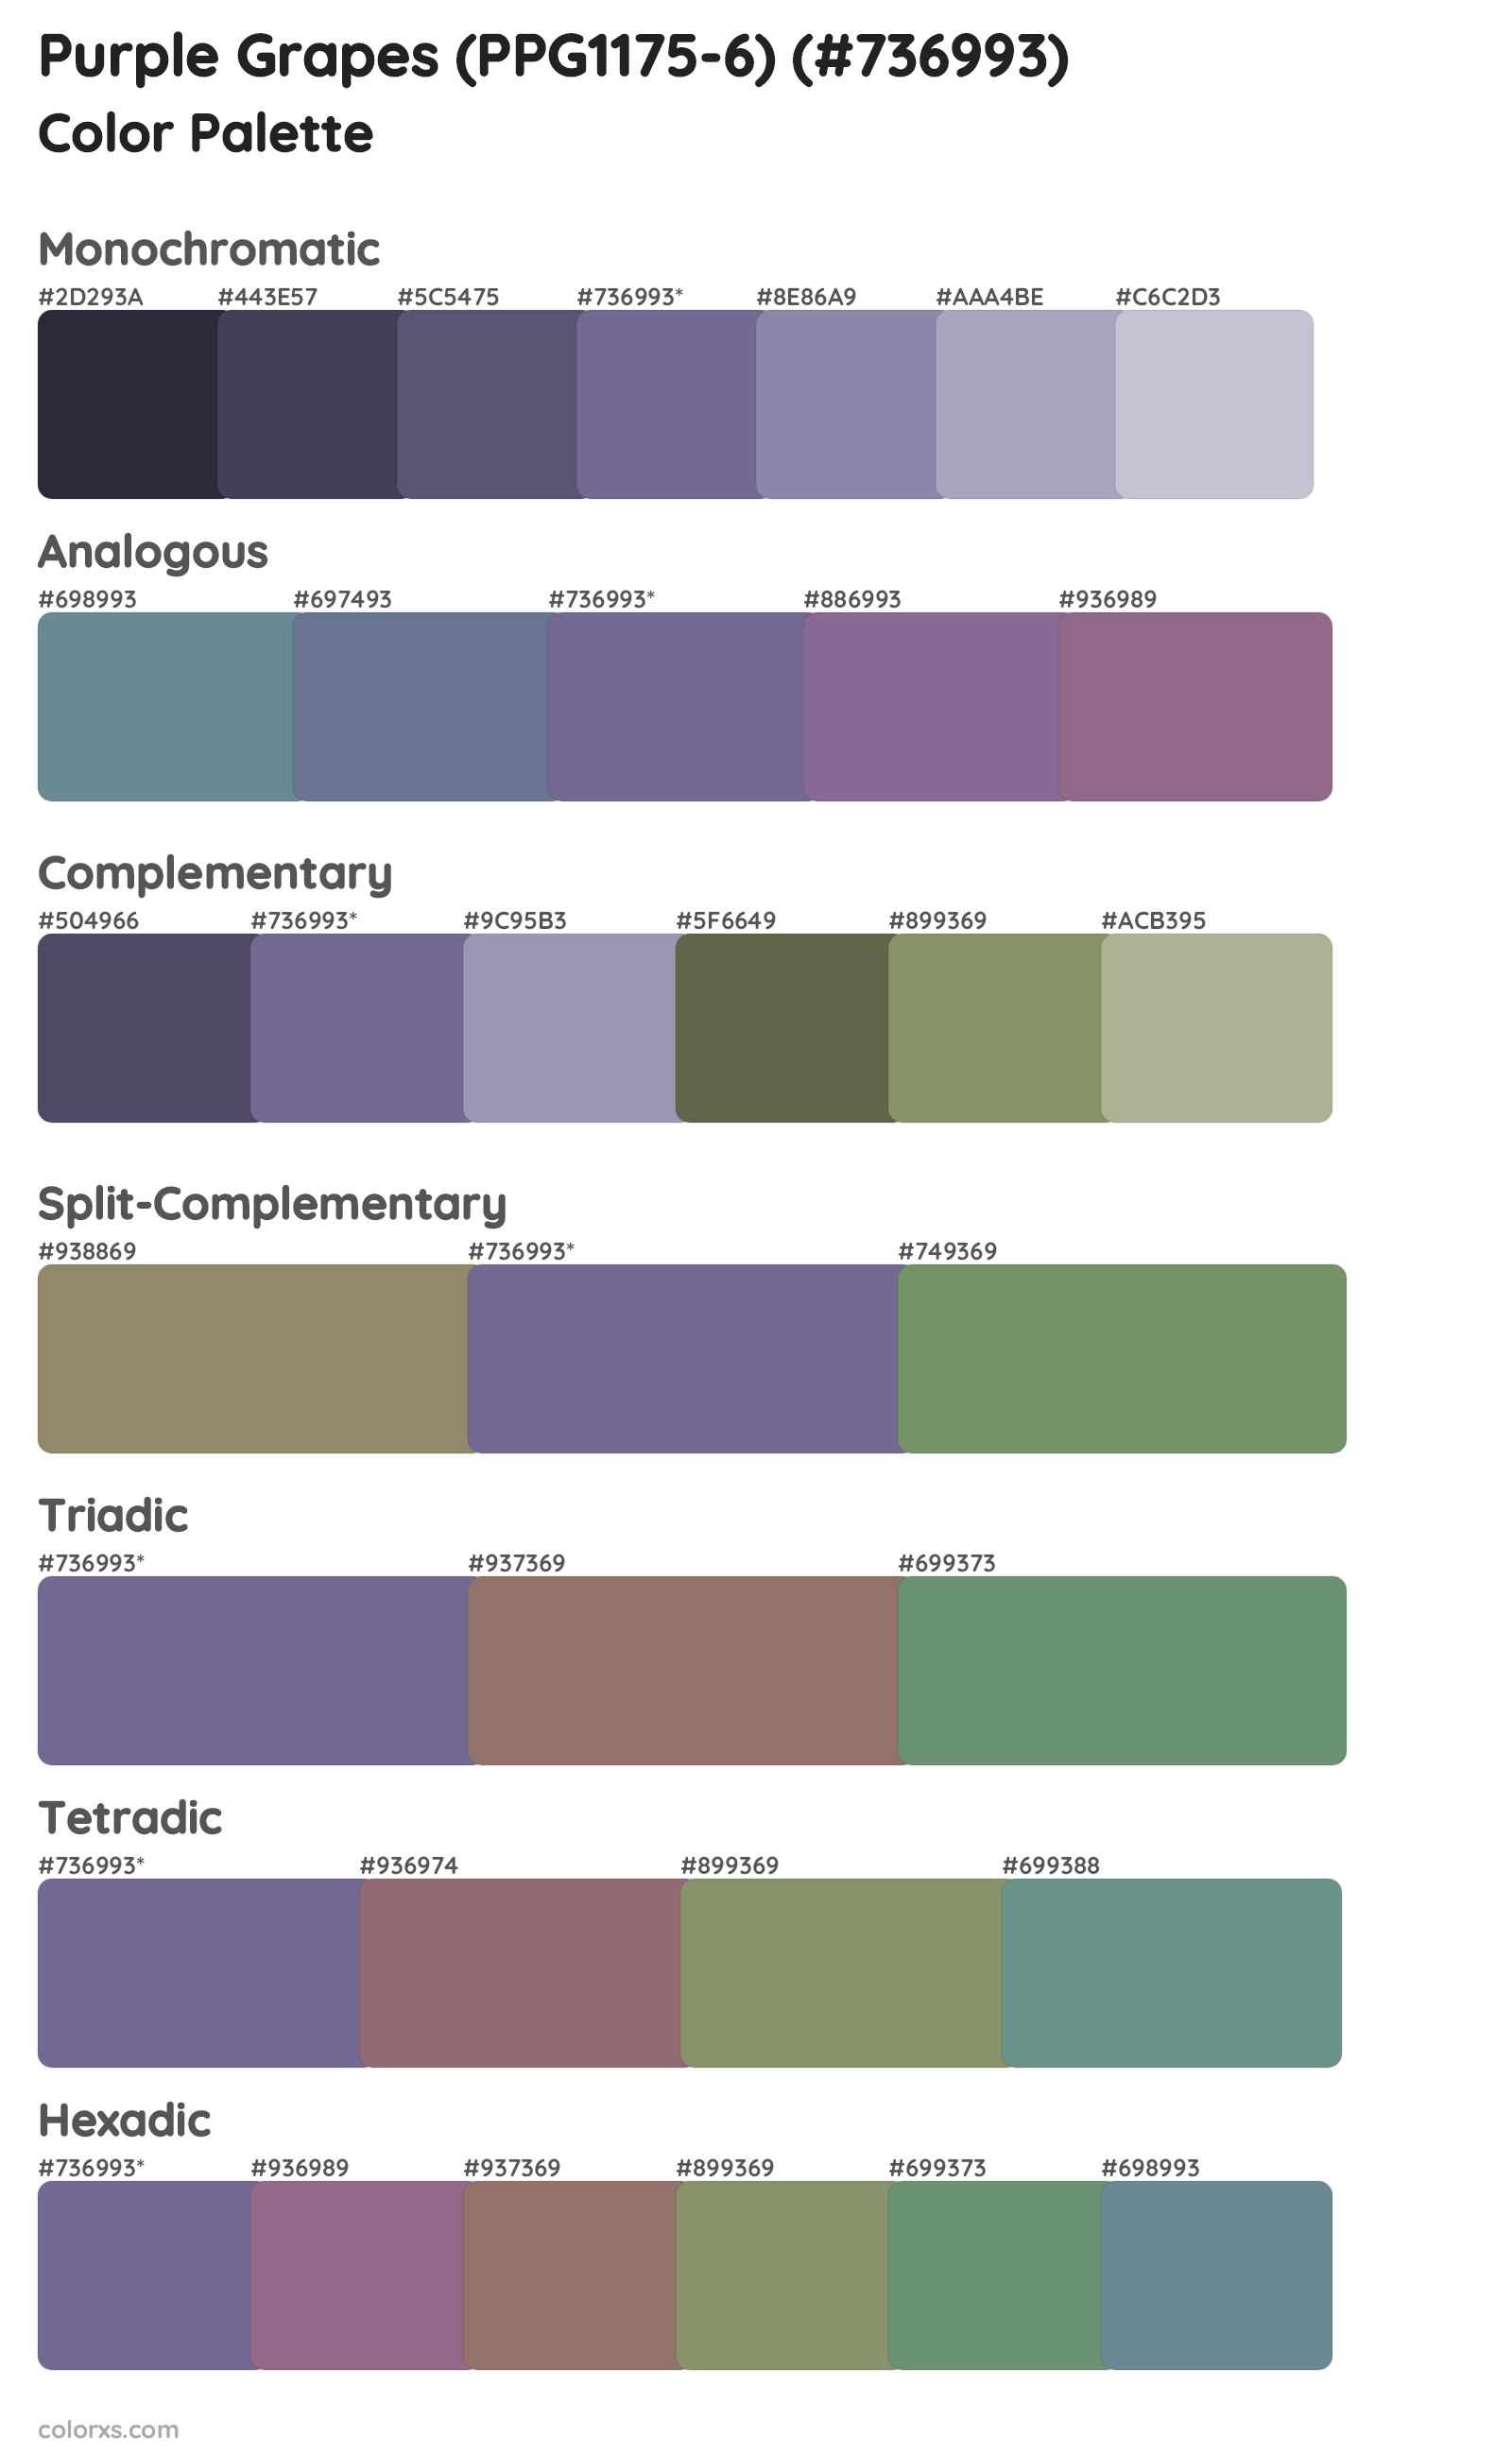 Purple Grapes (PPG1175-6) Color Scheme Palettes